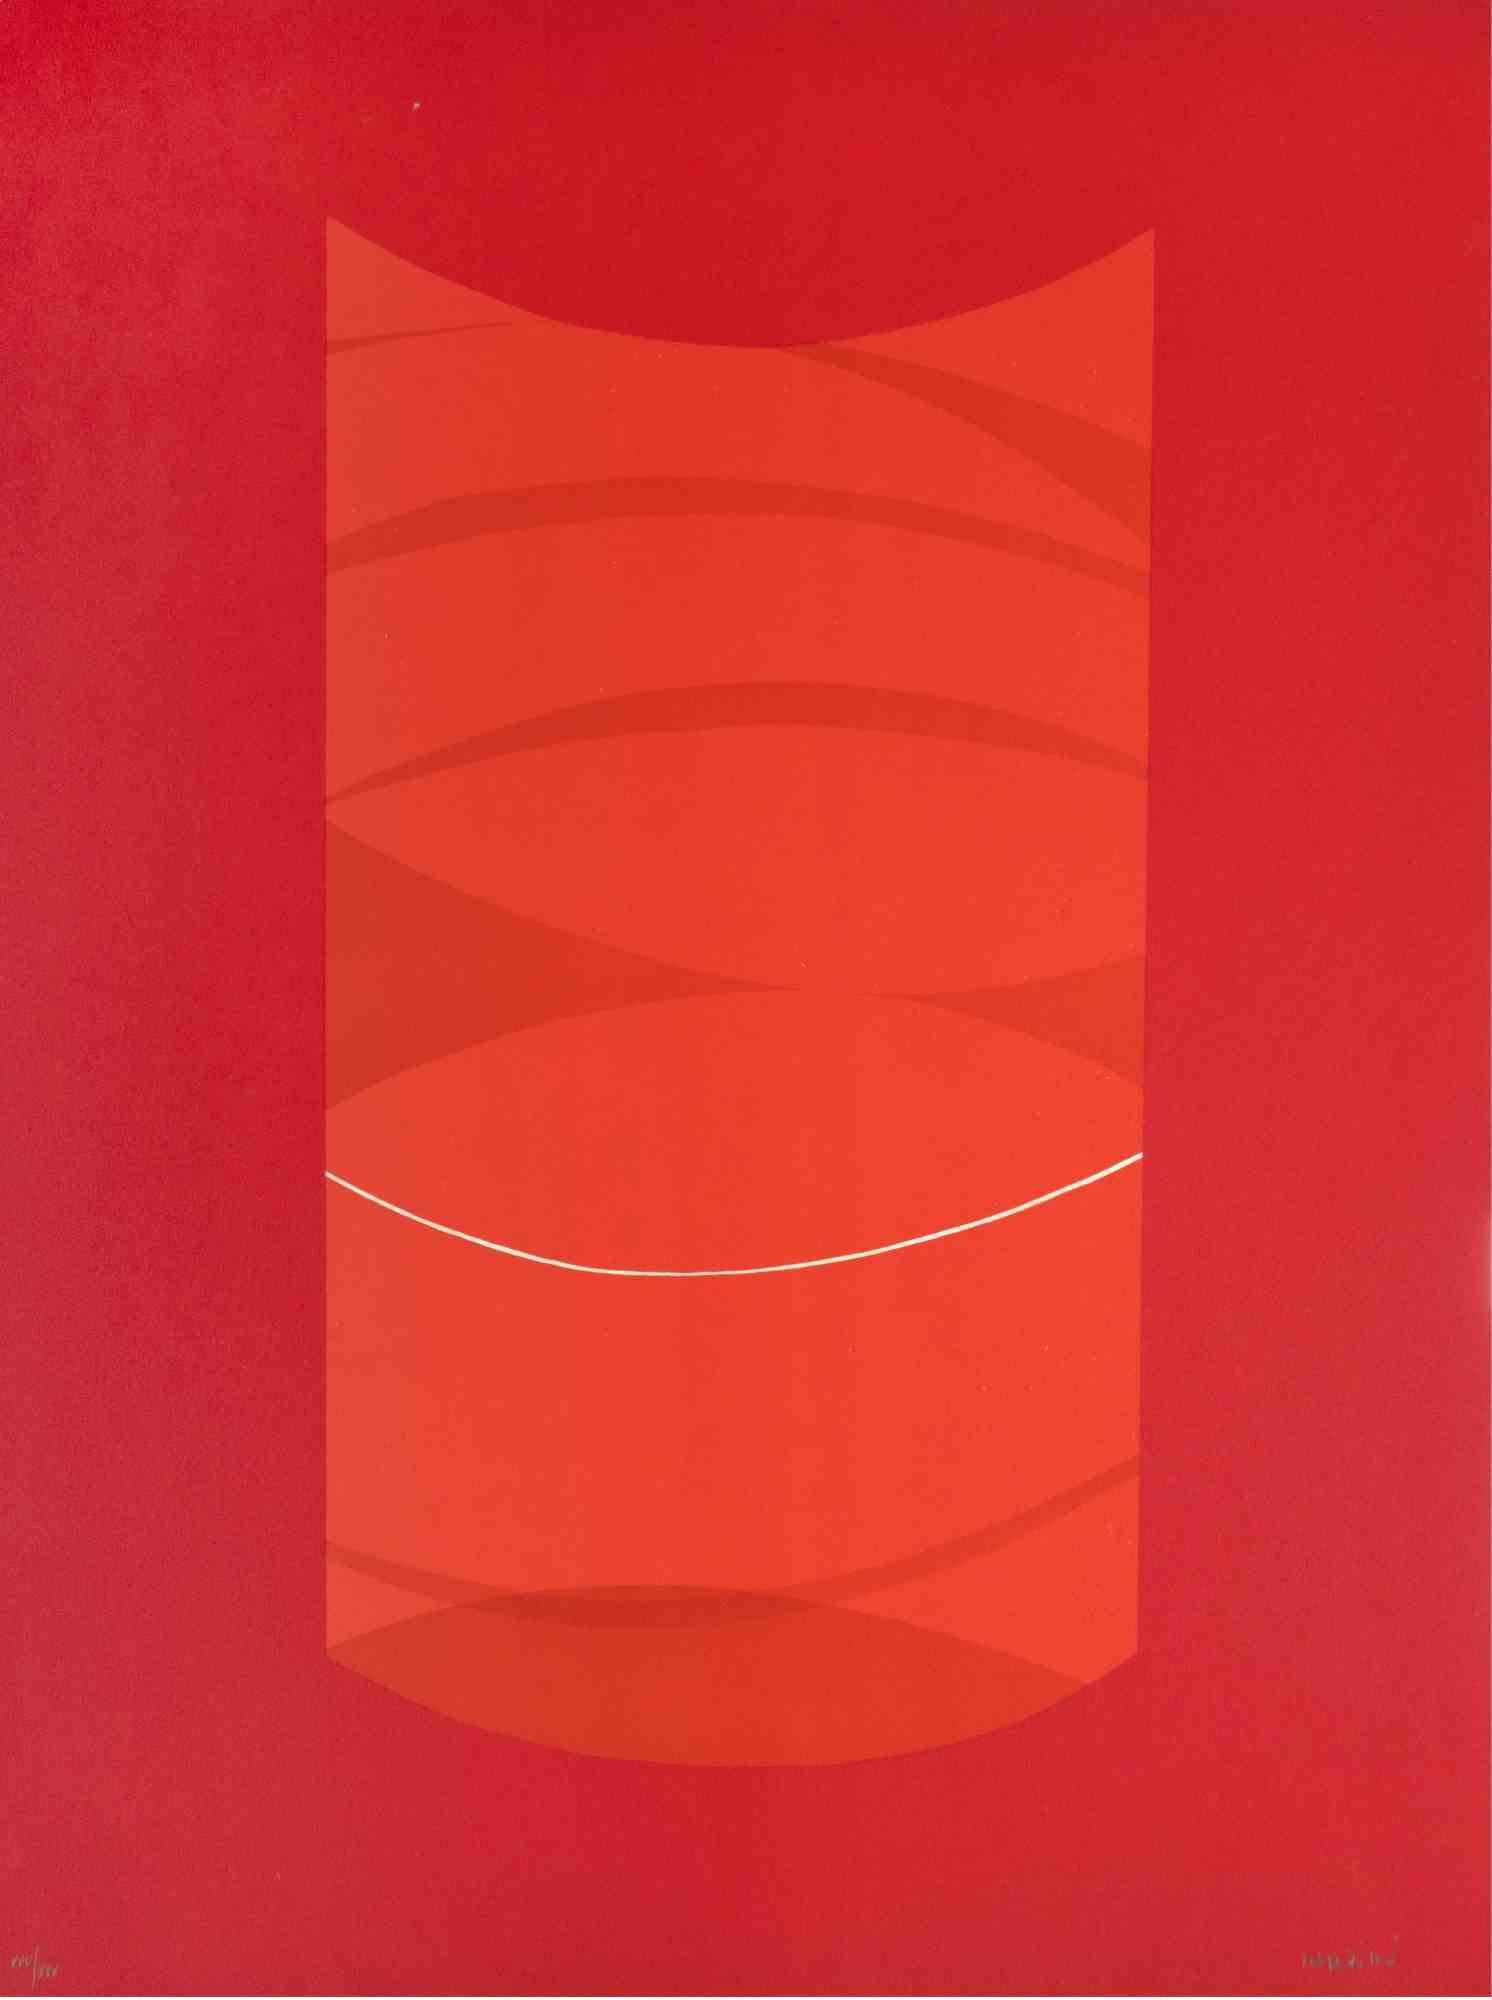 Red One ist ein zeitgenössisches Kunstwerk von Lorenzo Indrimi aus den 1970er Jahren.

Gemischtfarbige Lithographie.

Am unteren Rand handsigniert und datiert.

Ausgabe von XXV/XXX